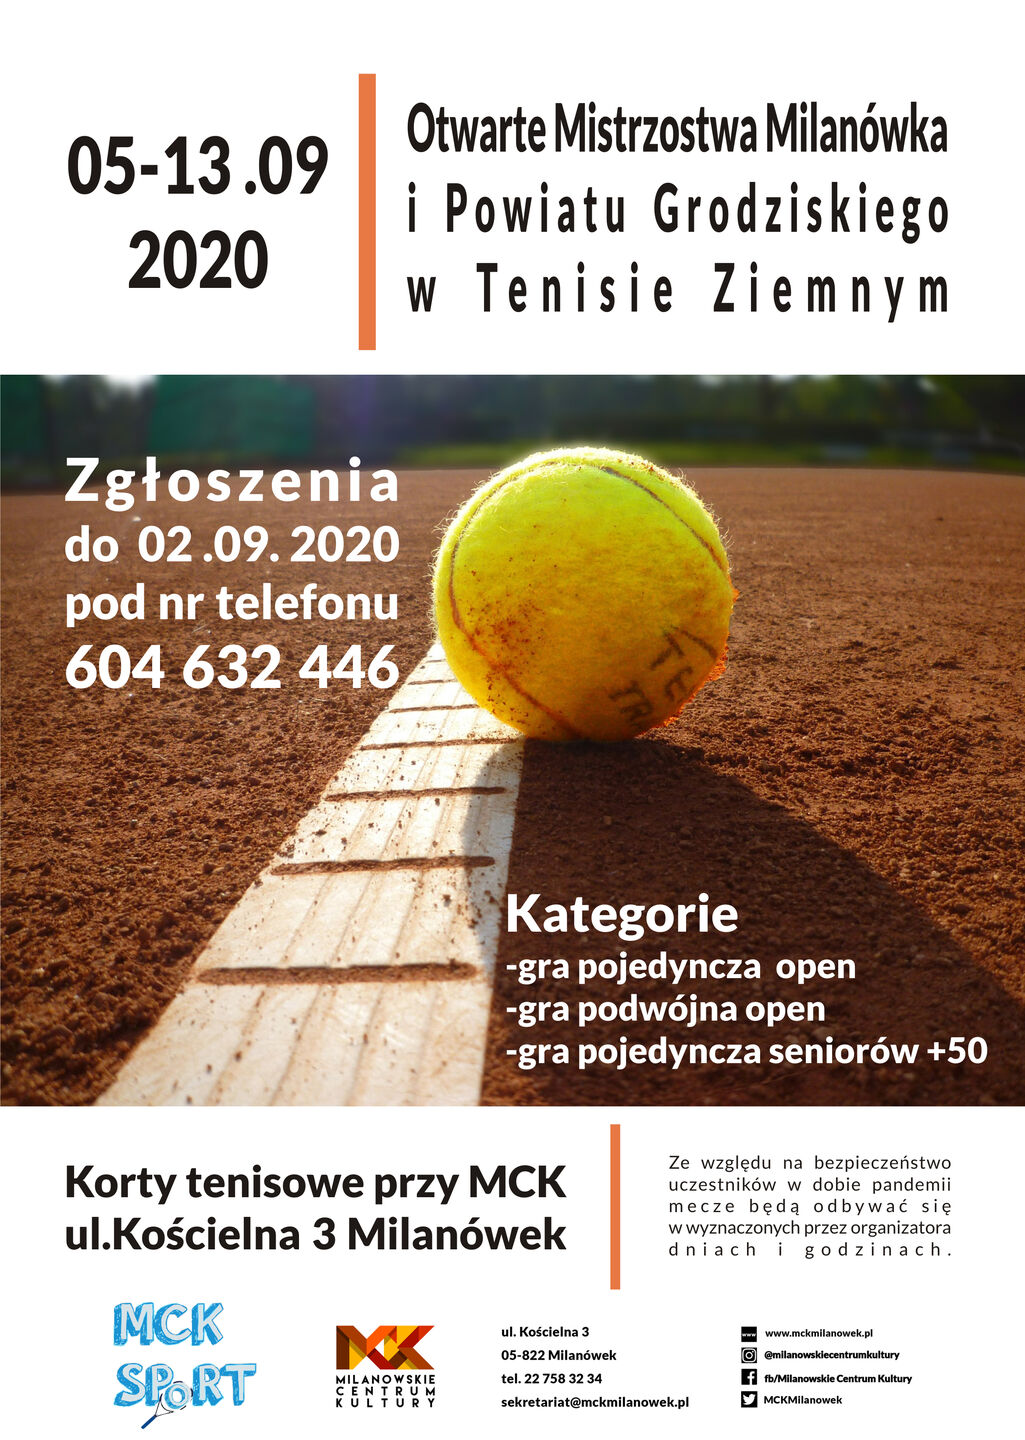 Mistrzostwa Tenis Ziemny 2020 